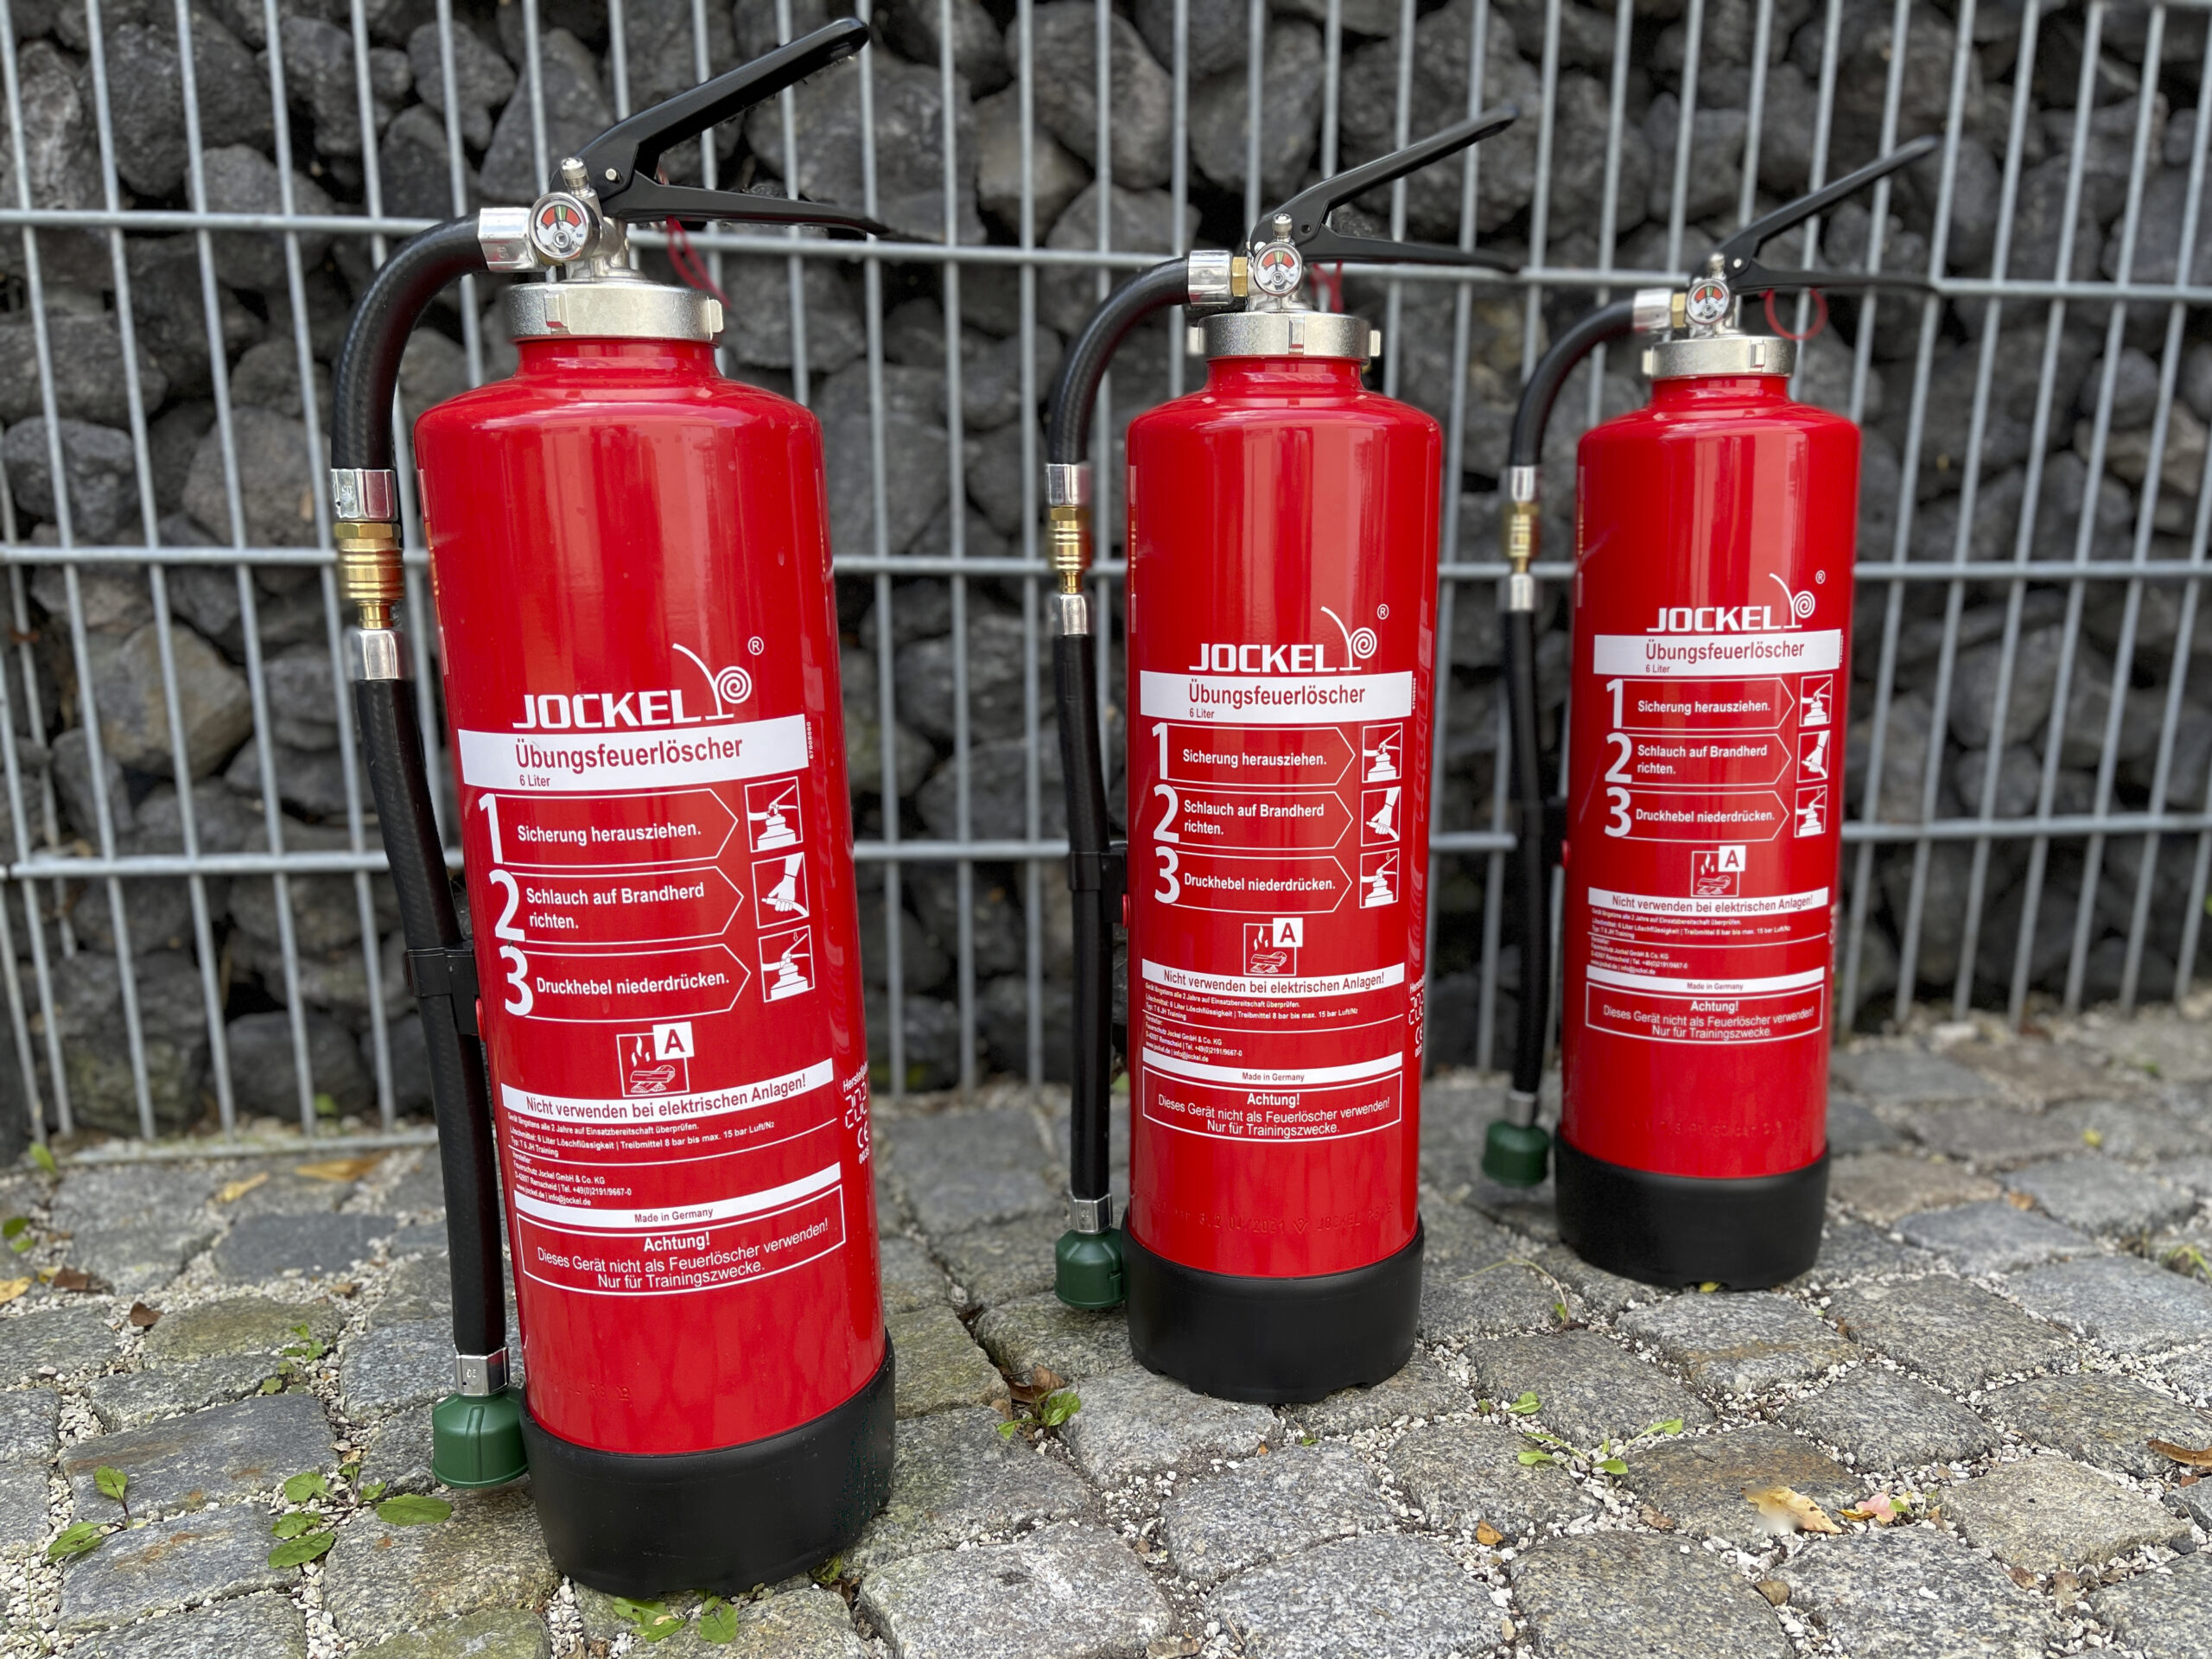 Feuerlöscher gratis Bild / fire extinguisher free download image